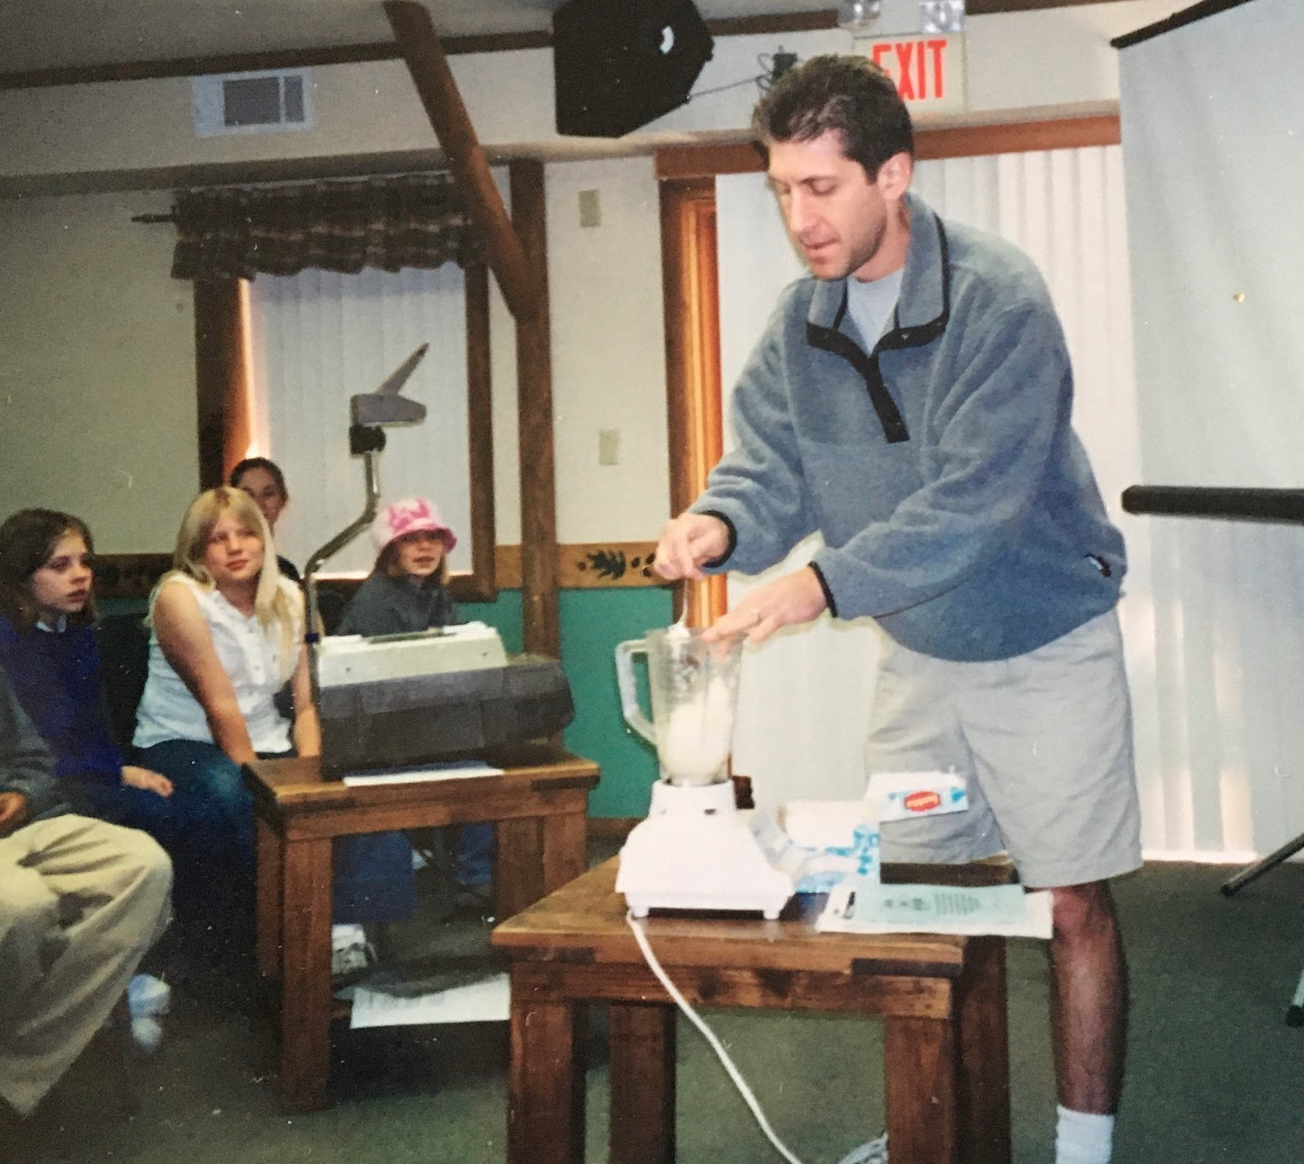 Youth retreat at Alpine, Jeff Maljian, 2001